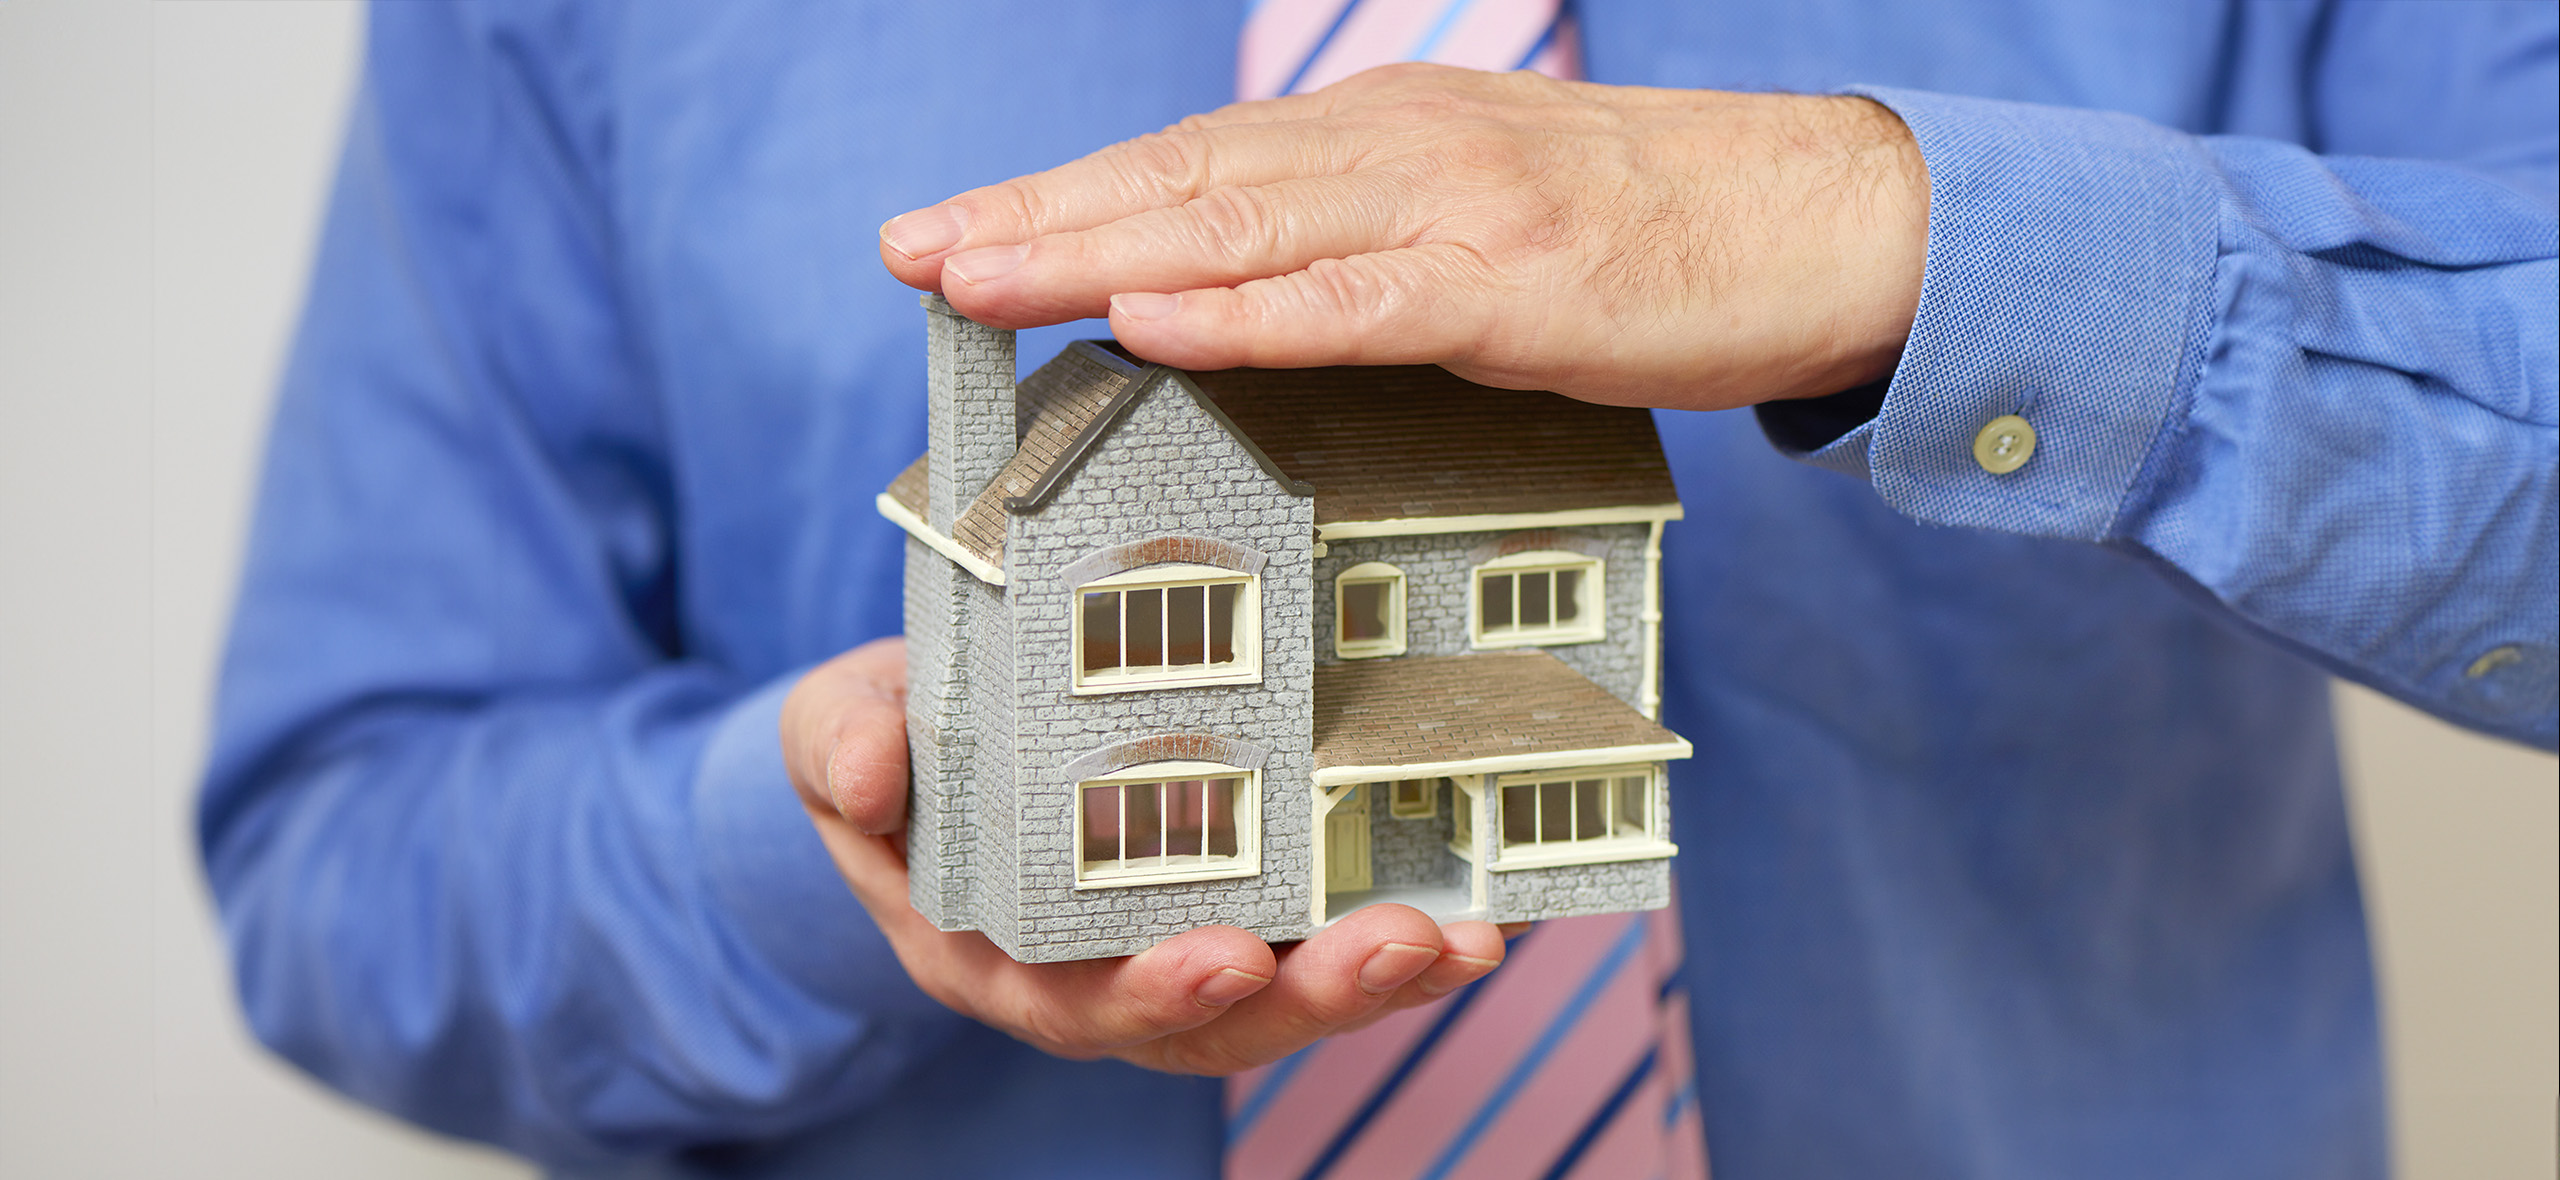 7 мифов о проверке недвижимости от банка